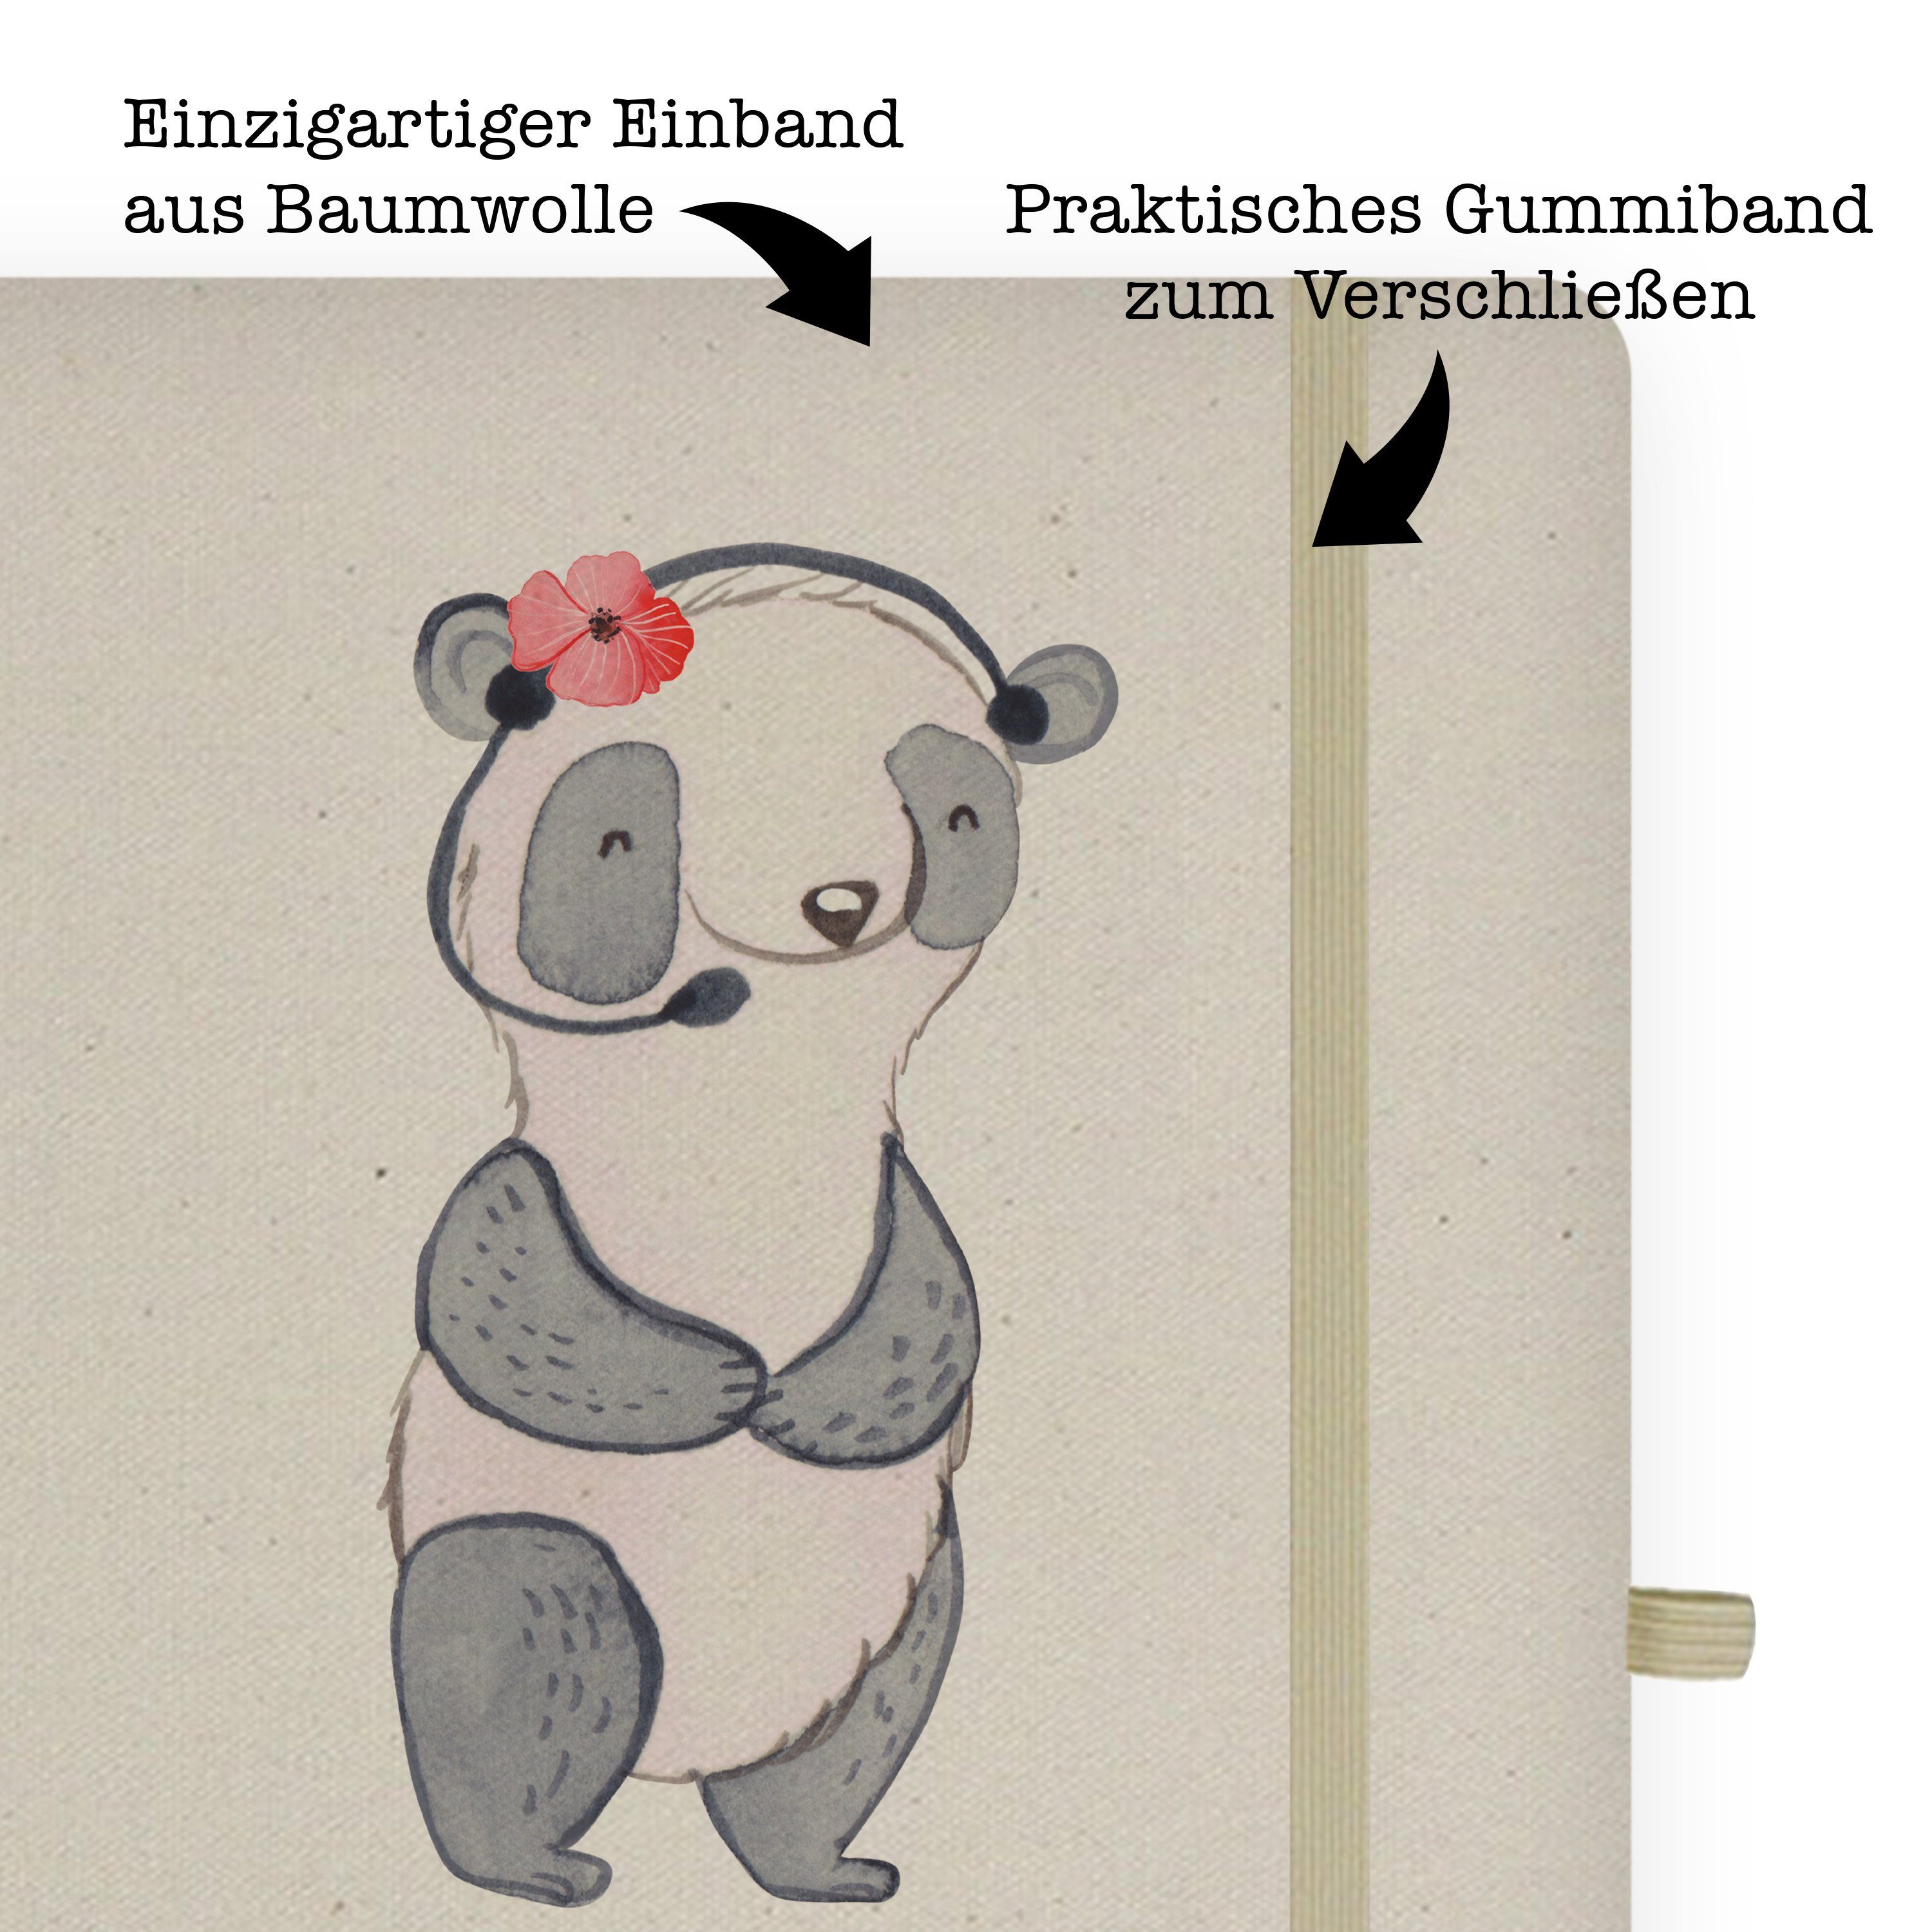 mit & Panda Transparent - Mr. Mrs. - Kundendienstmitarbeiterin Mr. Geschenk, & Notizbuch Callcent Herz Panda Mrs.